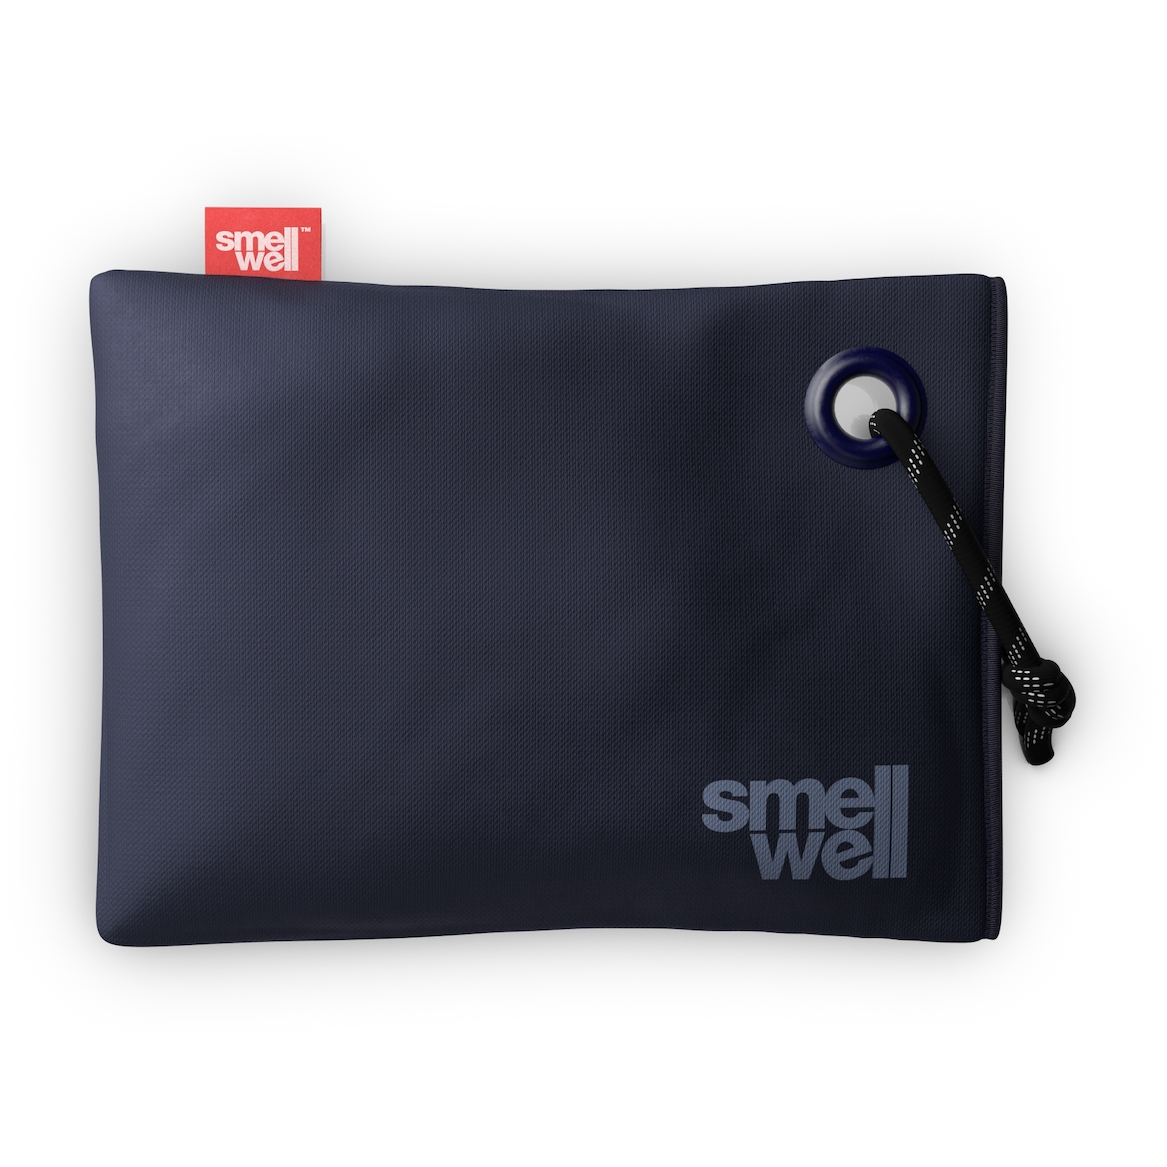 Produktbild von SmellWell Maxi Erfrischungskissen - midnight blue